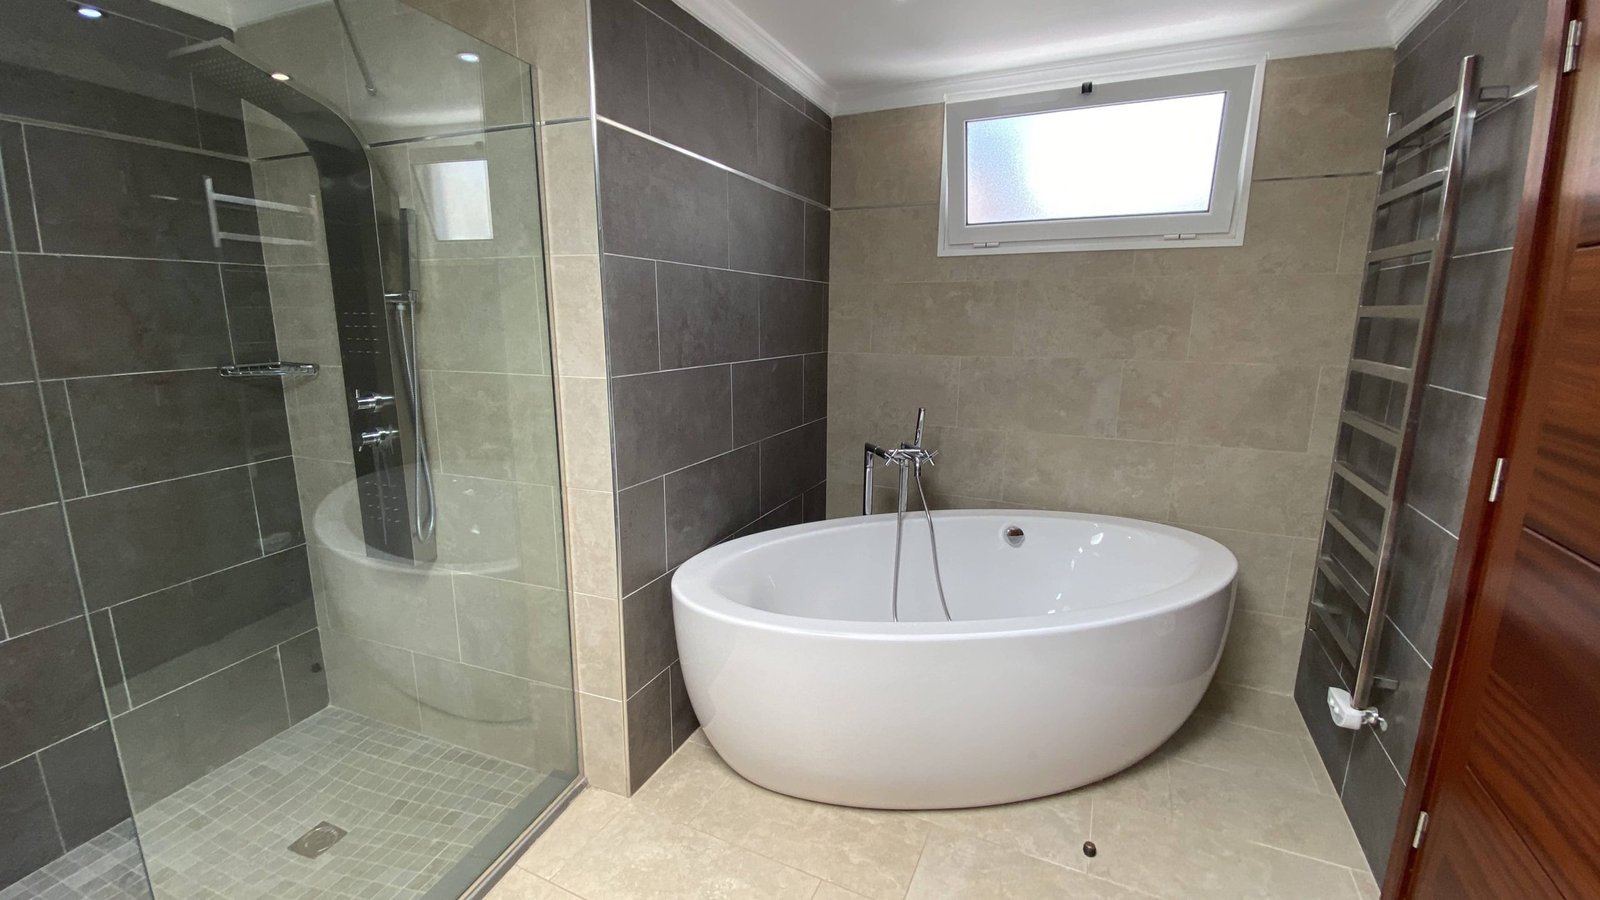 The Lodge - Lanzarote - 3 Bedroom Villa - Bath room 2